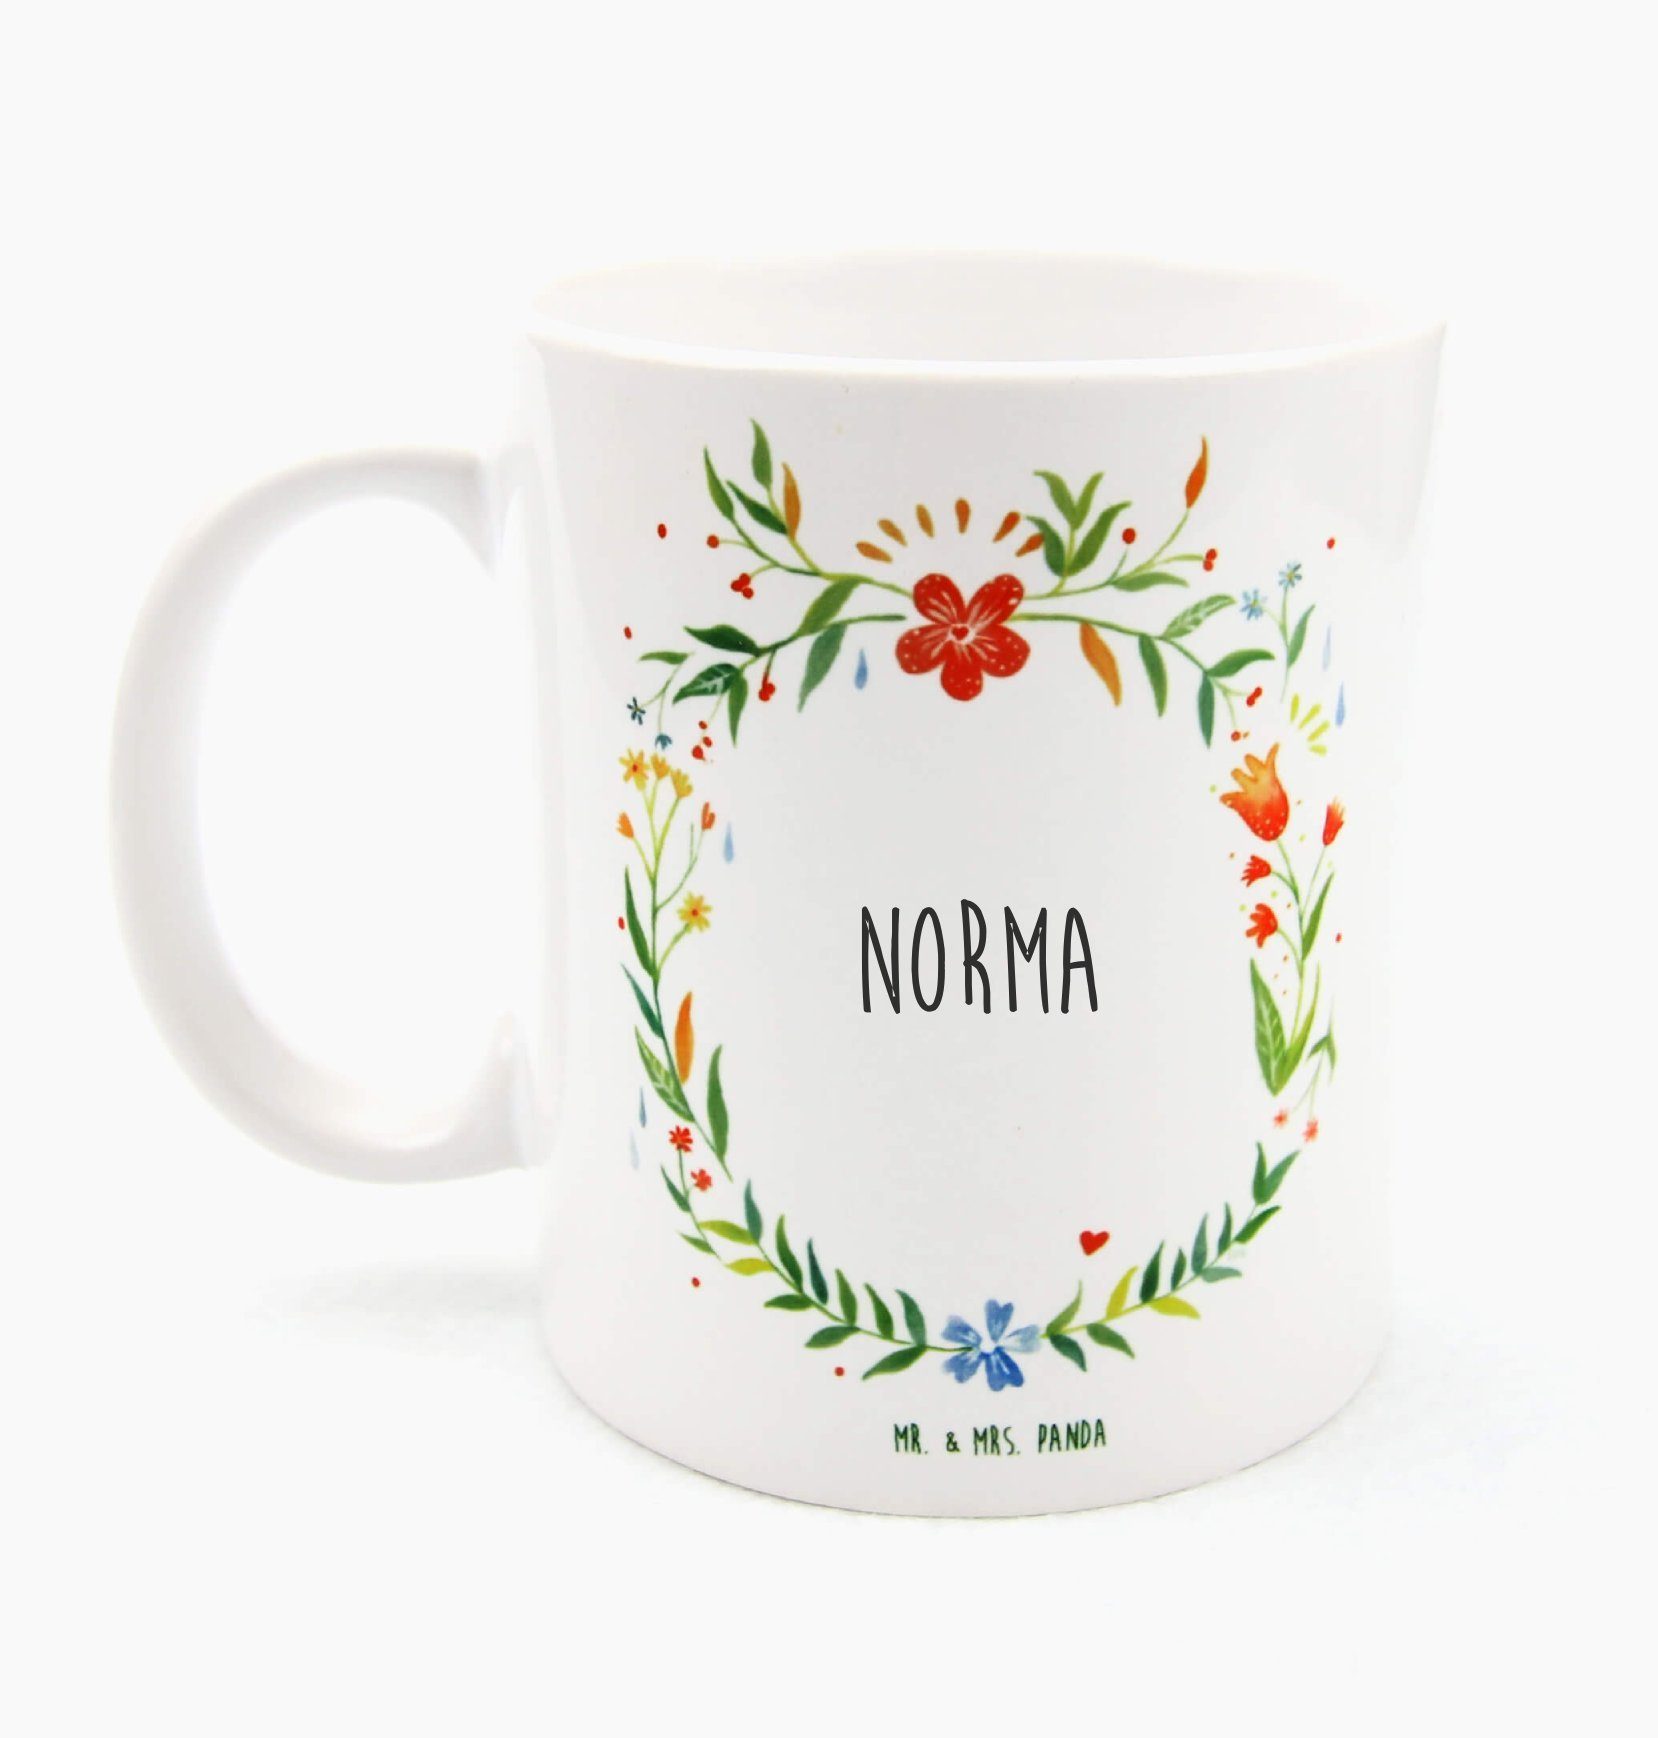 Mr. & Mrs. Panda Tasse Norma - Geschenk, Becher, Tee, Kaffeetasse,  Frühstück, Kaffeebecher, Keramik